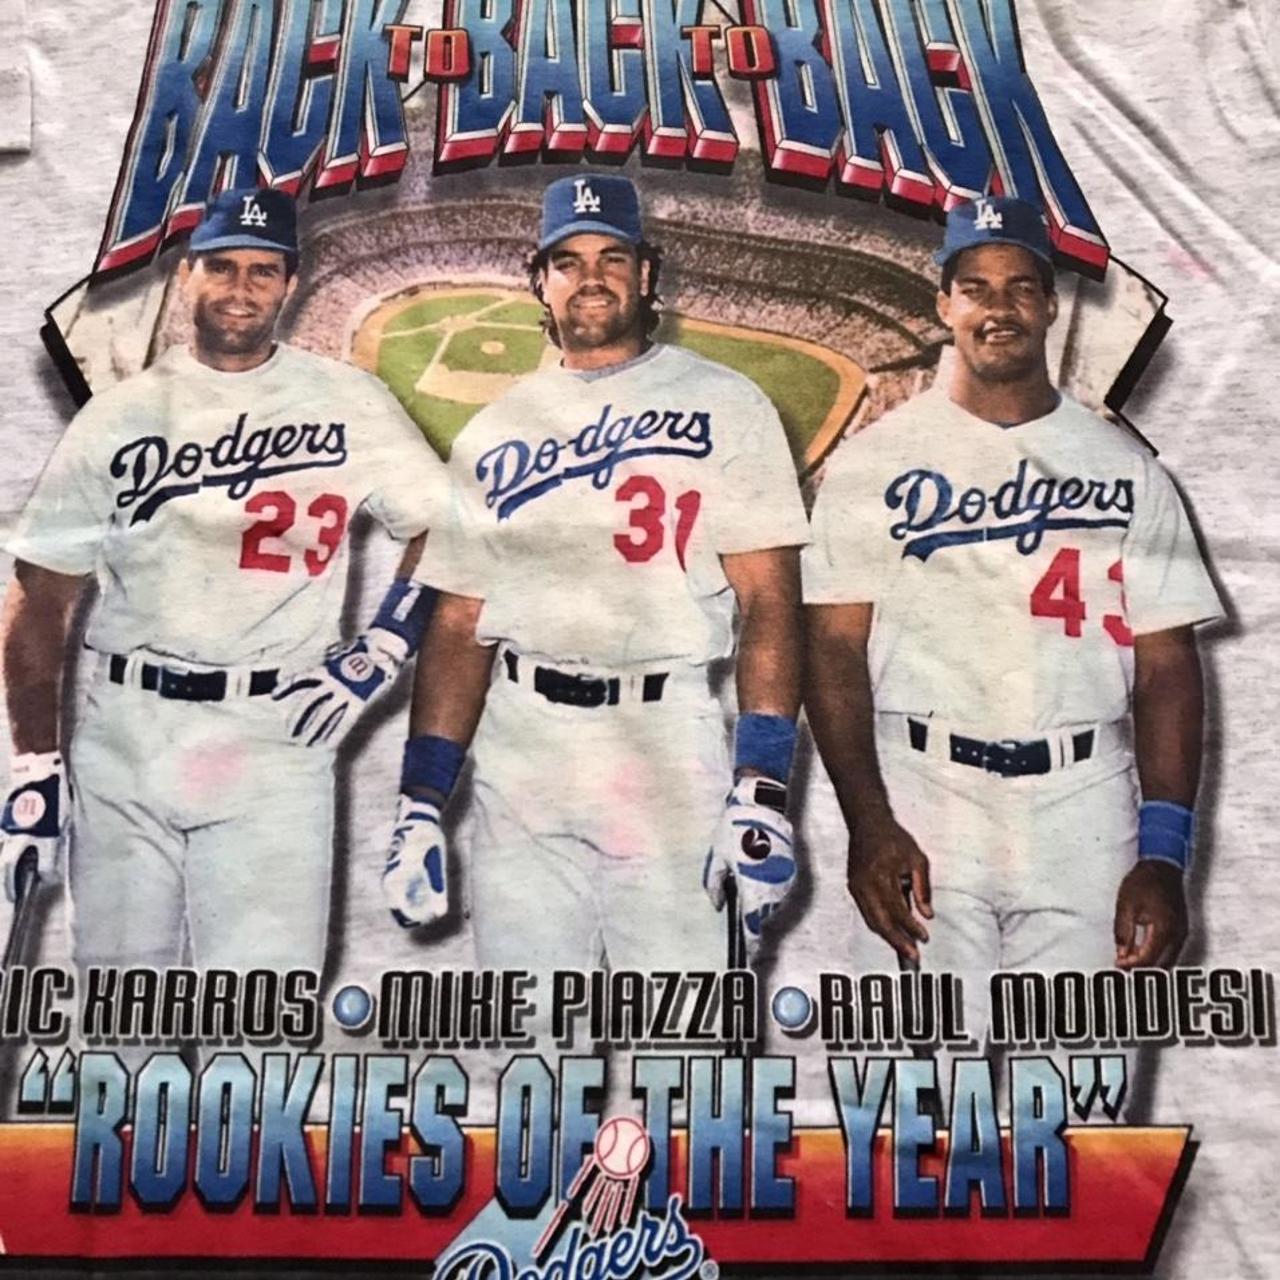 La Dodgers Shirt Mens 3xl Thrashed Repairs and Color - Depop